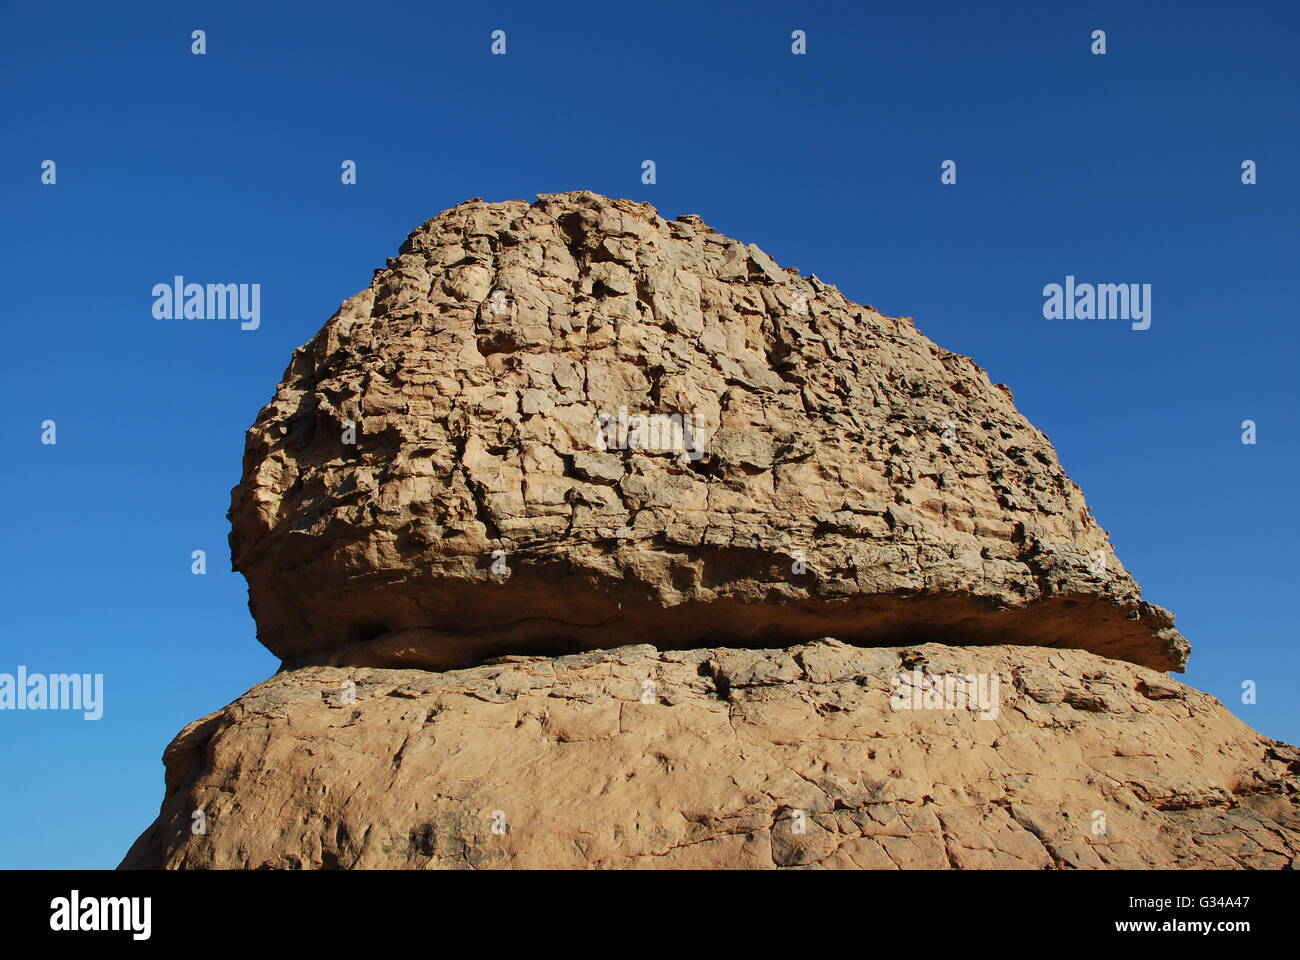 Giant boulder desert Algeria Stock Photo